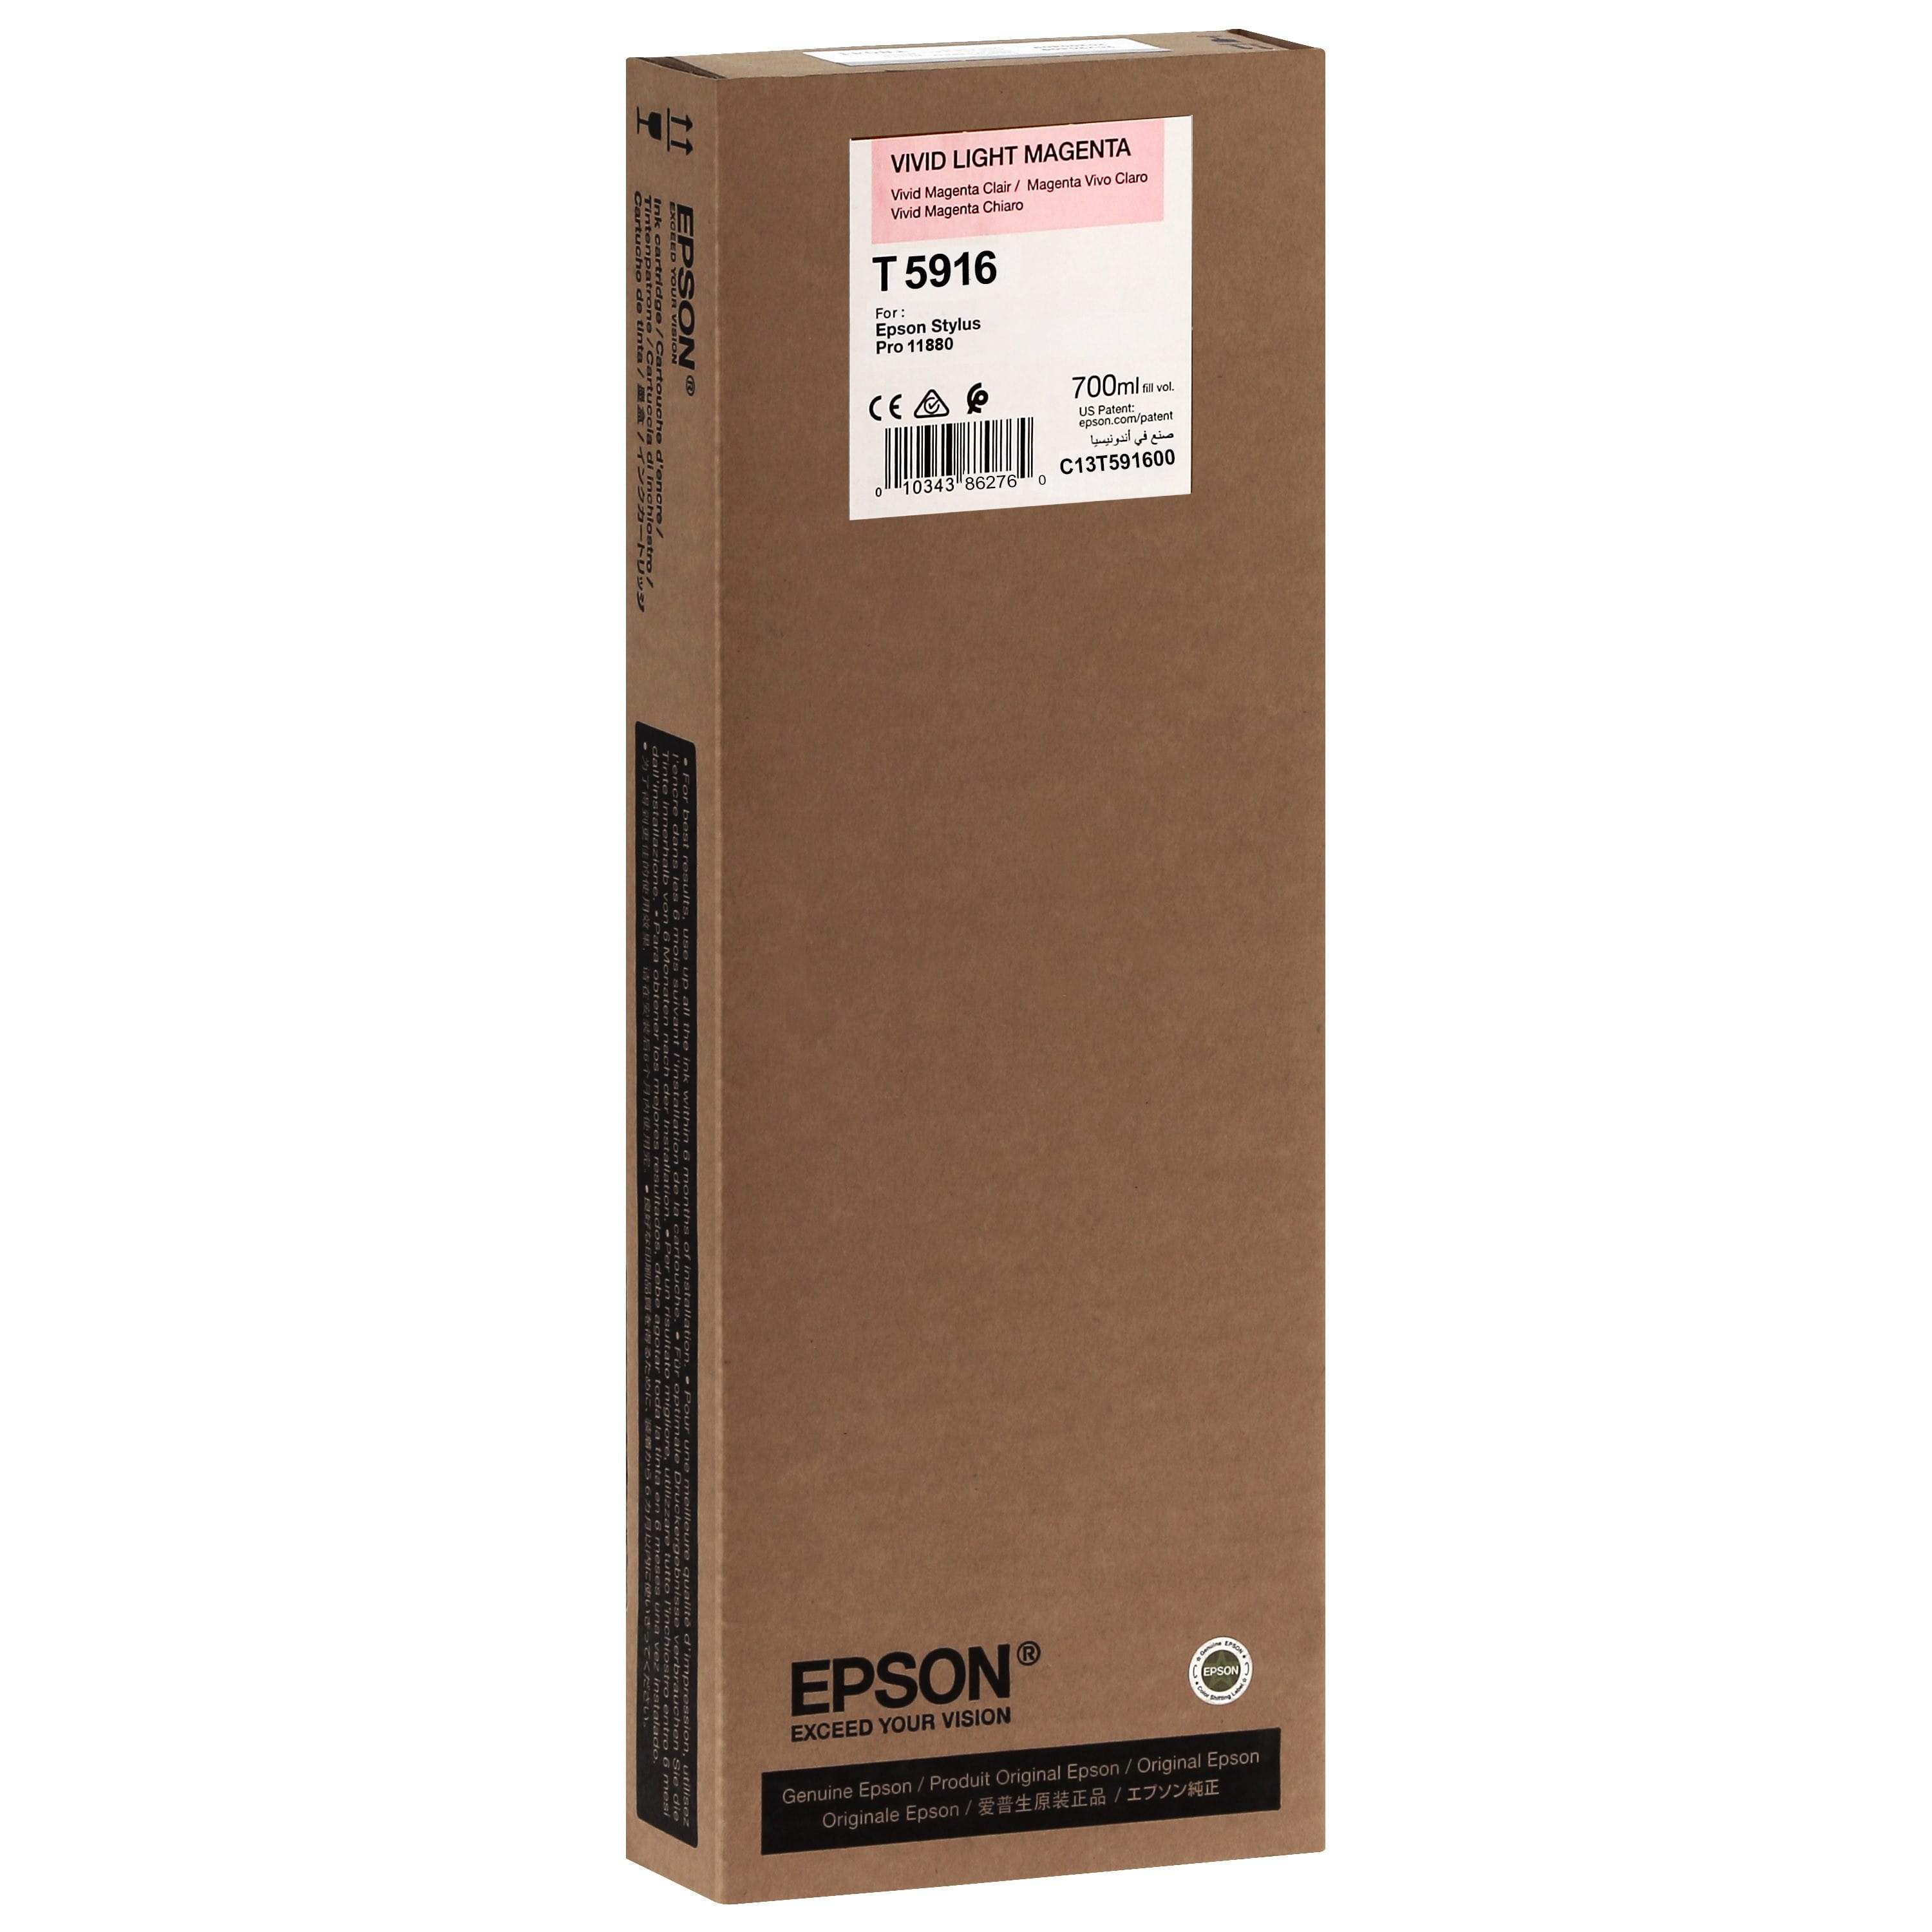 EPSON - Cartouche d'encre traceur T5916 Pour imprimante 11880 Vivid Magenta clair - 700ml